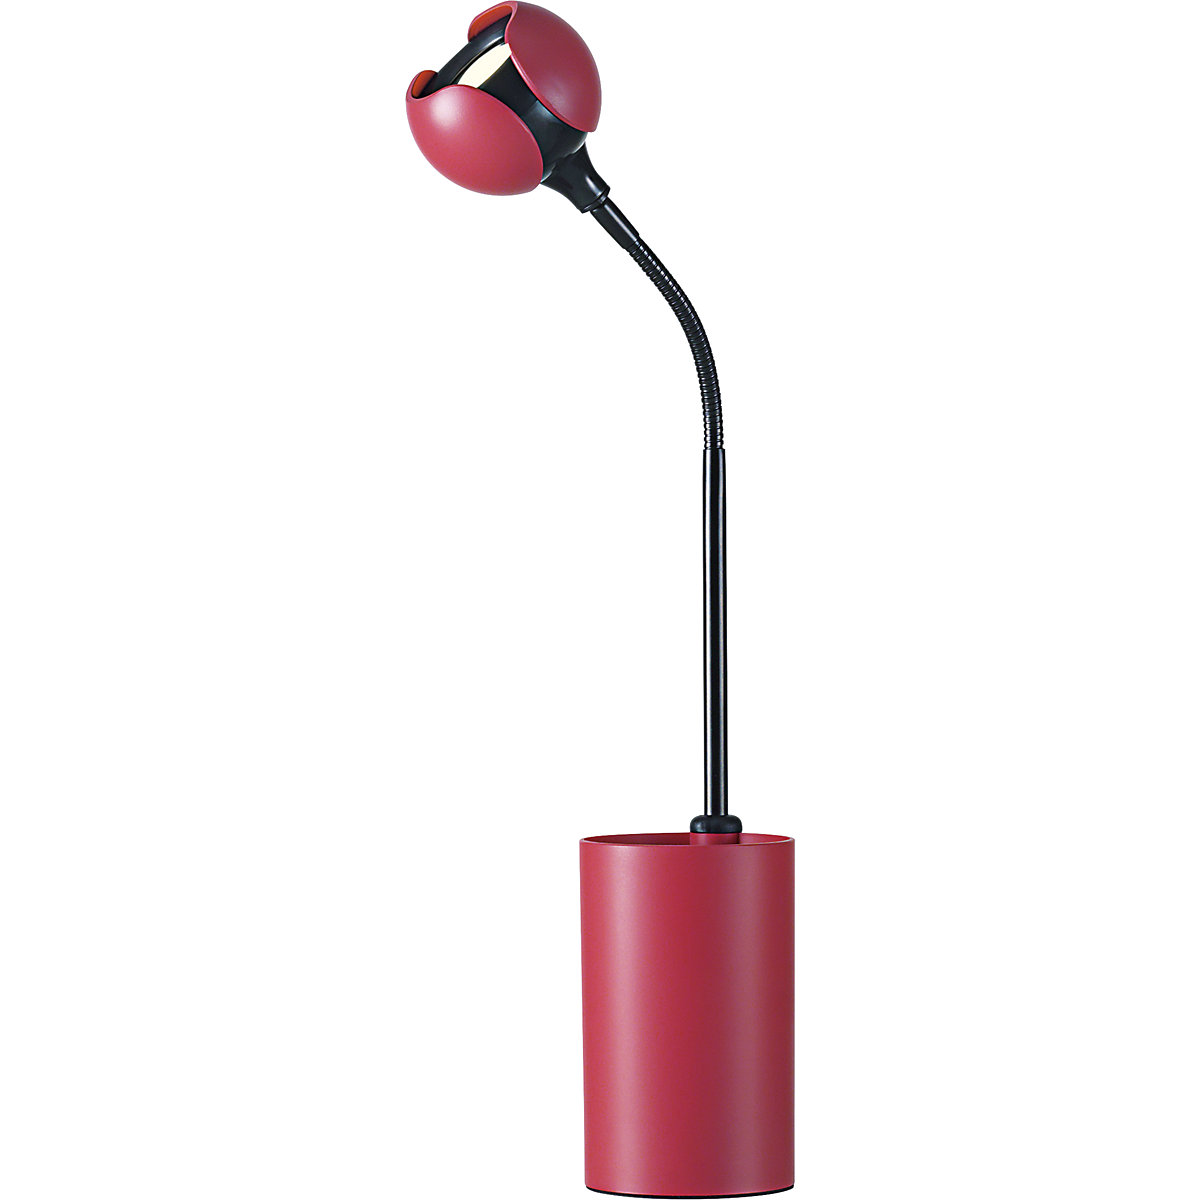 Stolní LED svítidlo FLOWER – Hansa, výška 475 mm, korálová červená-6